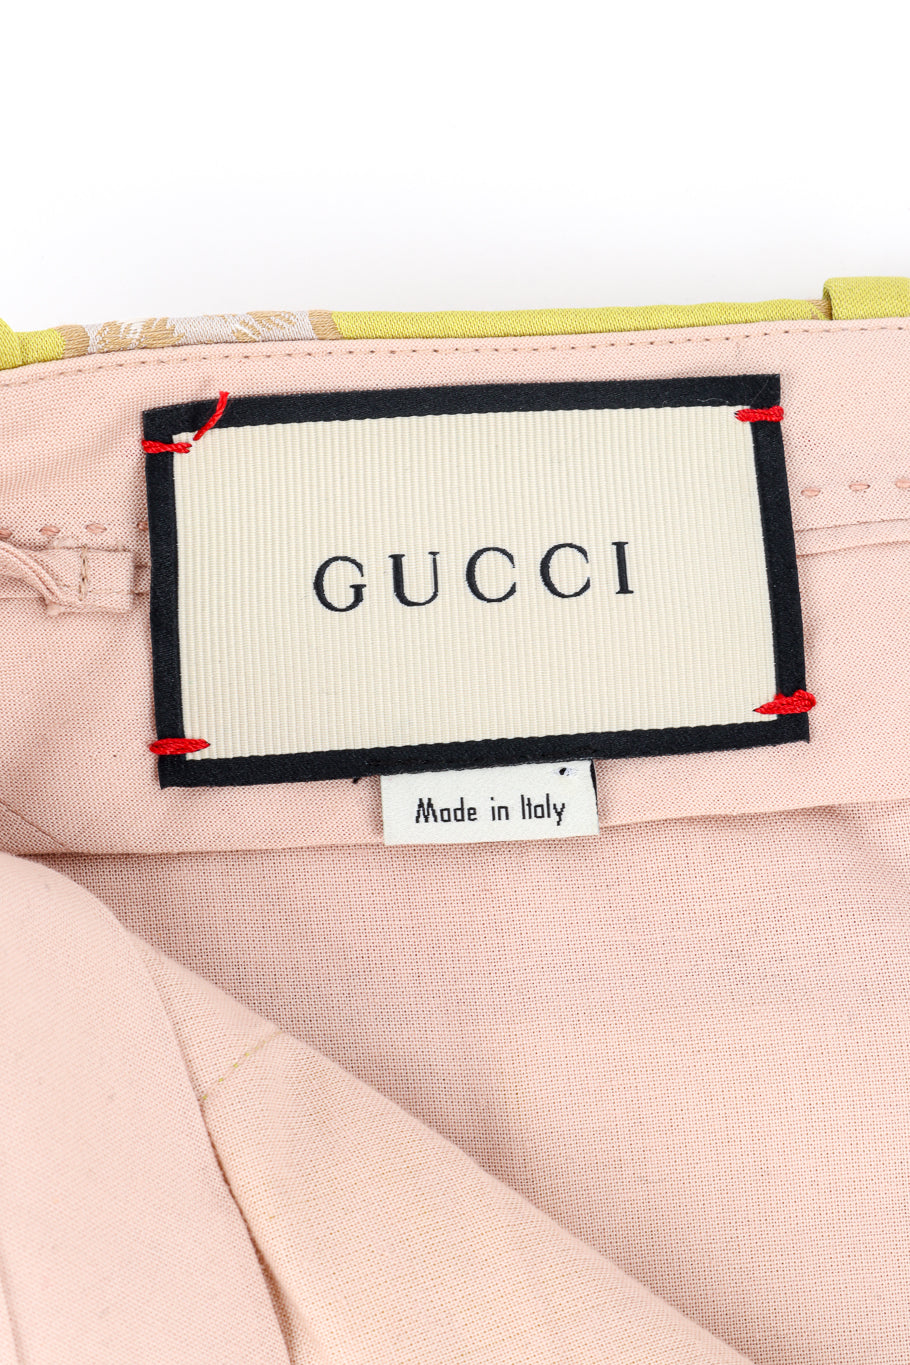 Gucci 2017 S/S Floral Brocade Bellbottoms signature label closeup @recess la